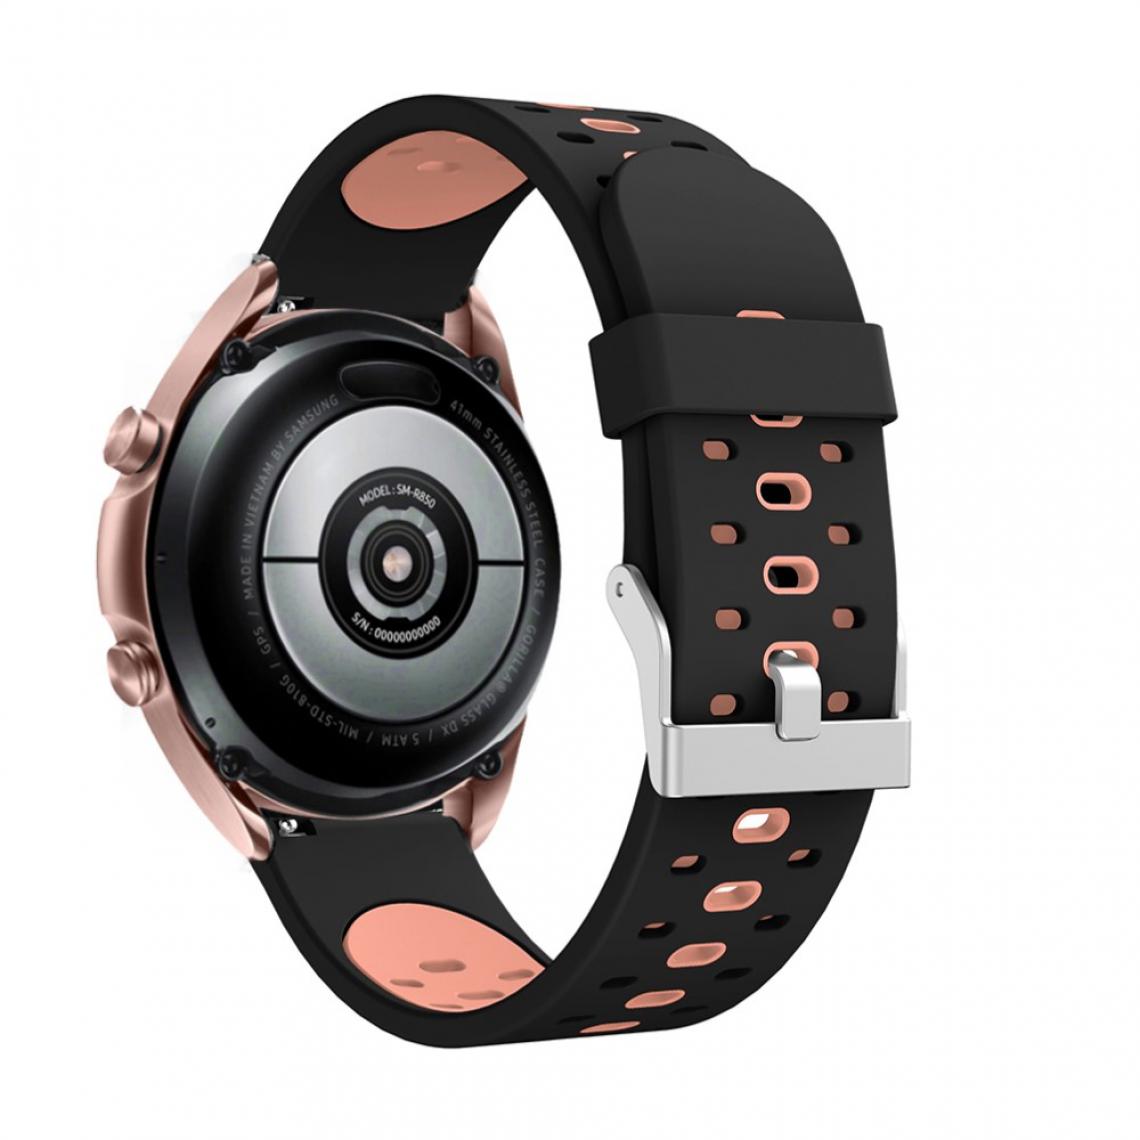 Other - Bracelet en silicone 20 mm bicolore noir/rose pour votre Samsung Galaxy Watch3 41mm - Accessoires bracelet connecté